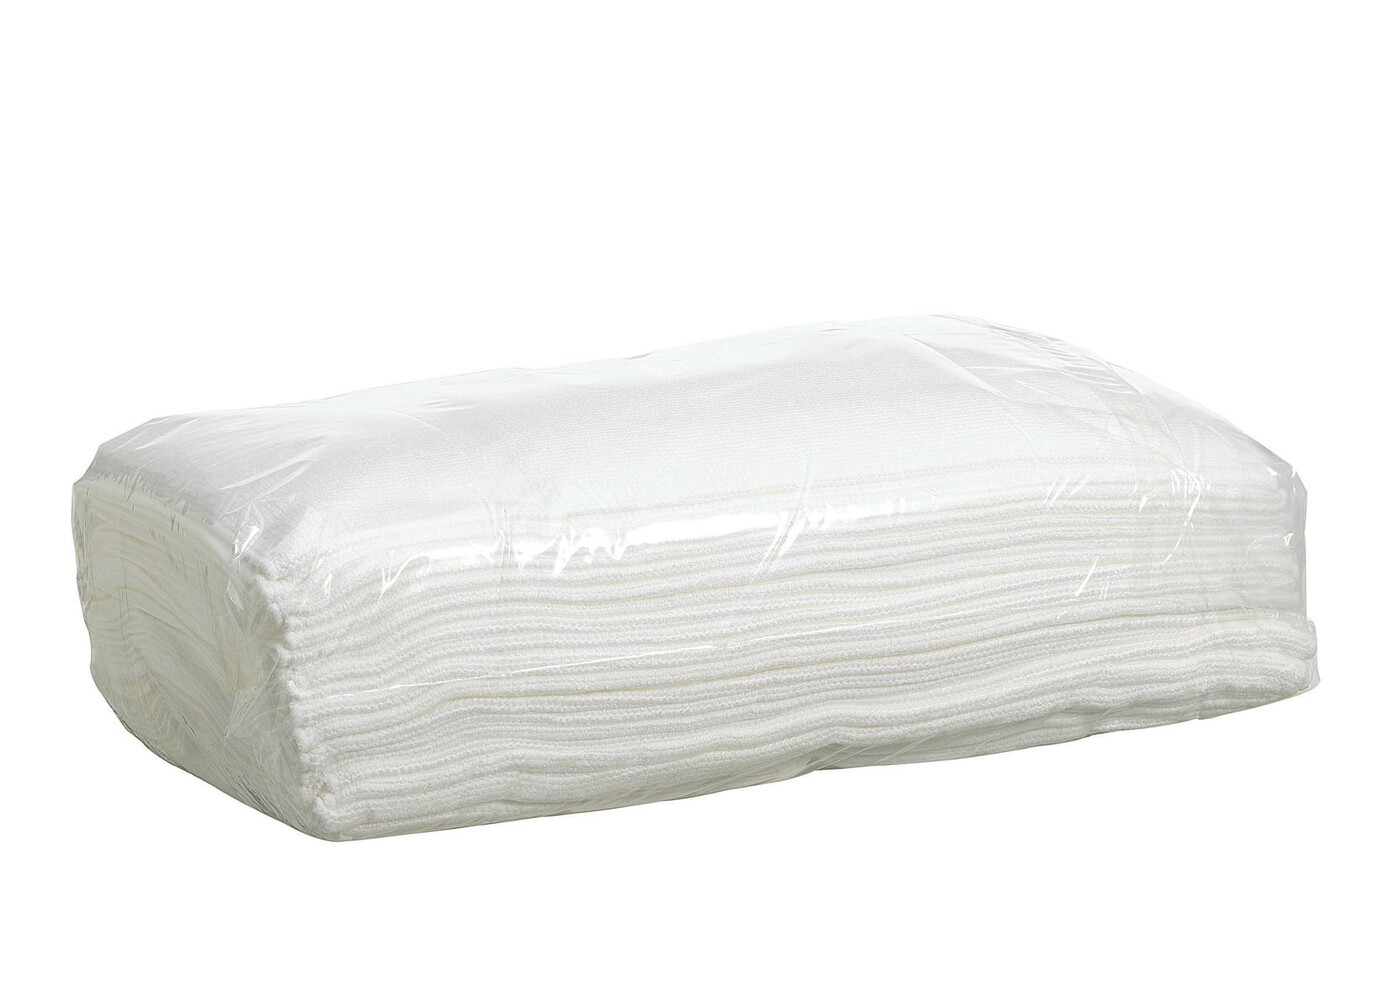 Kimtech® Auto Surface Preparation Microfibre Cloths 38715 - 1 x 25 white cloths (box contains 1 pack) - 38715